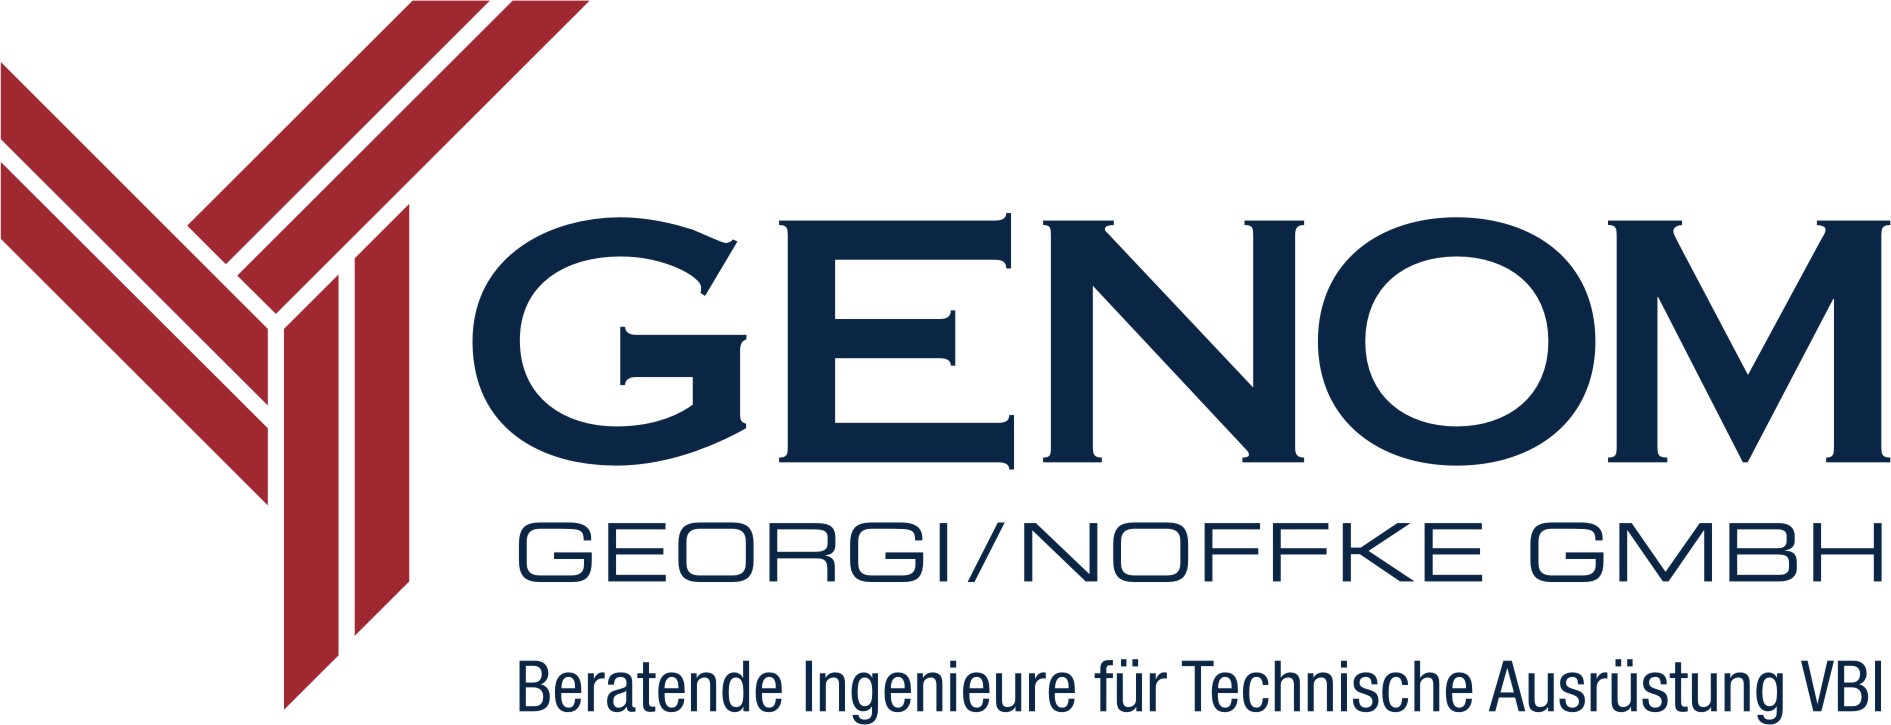 Datenschutz der Ingenieurbüro GENOM | Zittau, Dresden Cottbus